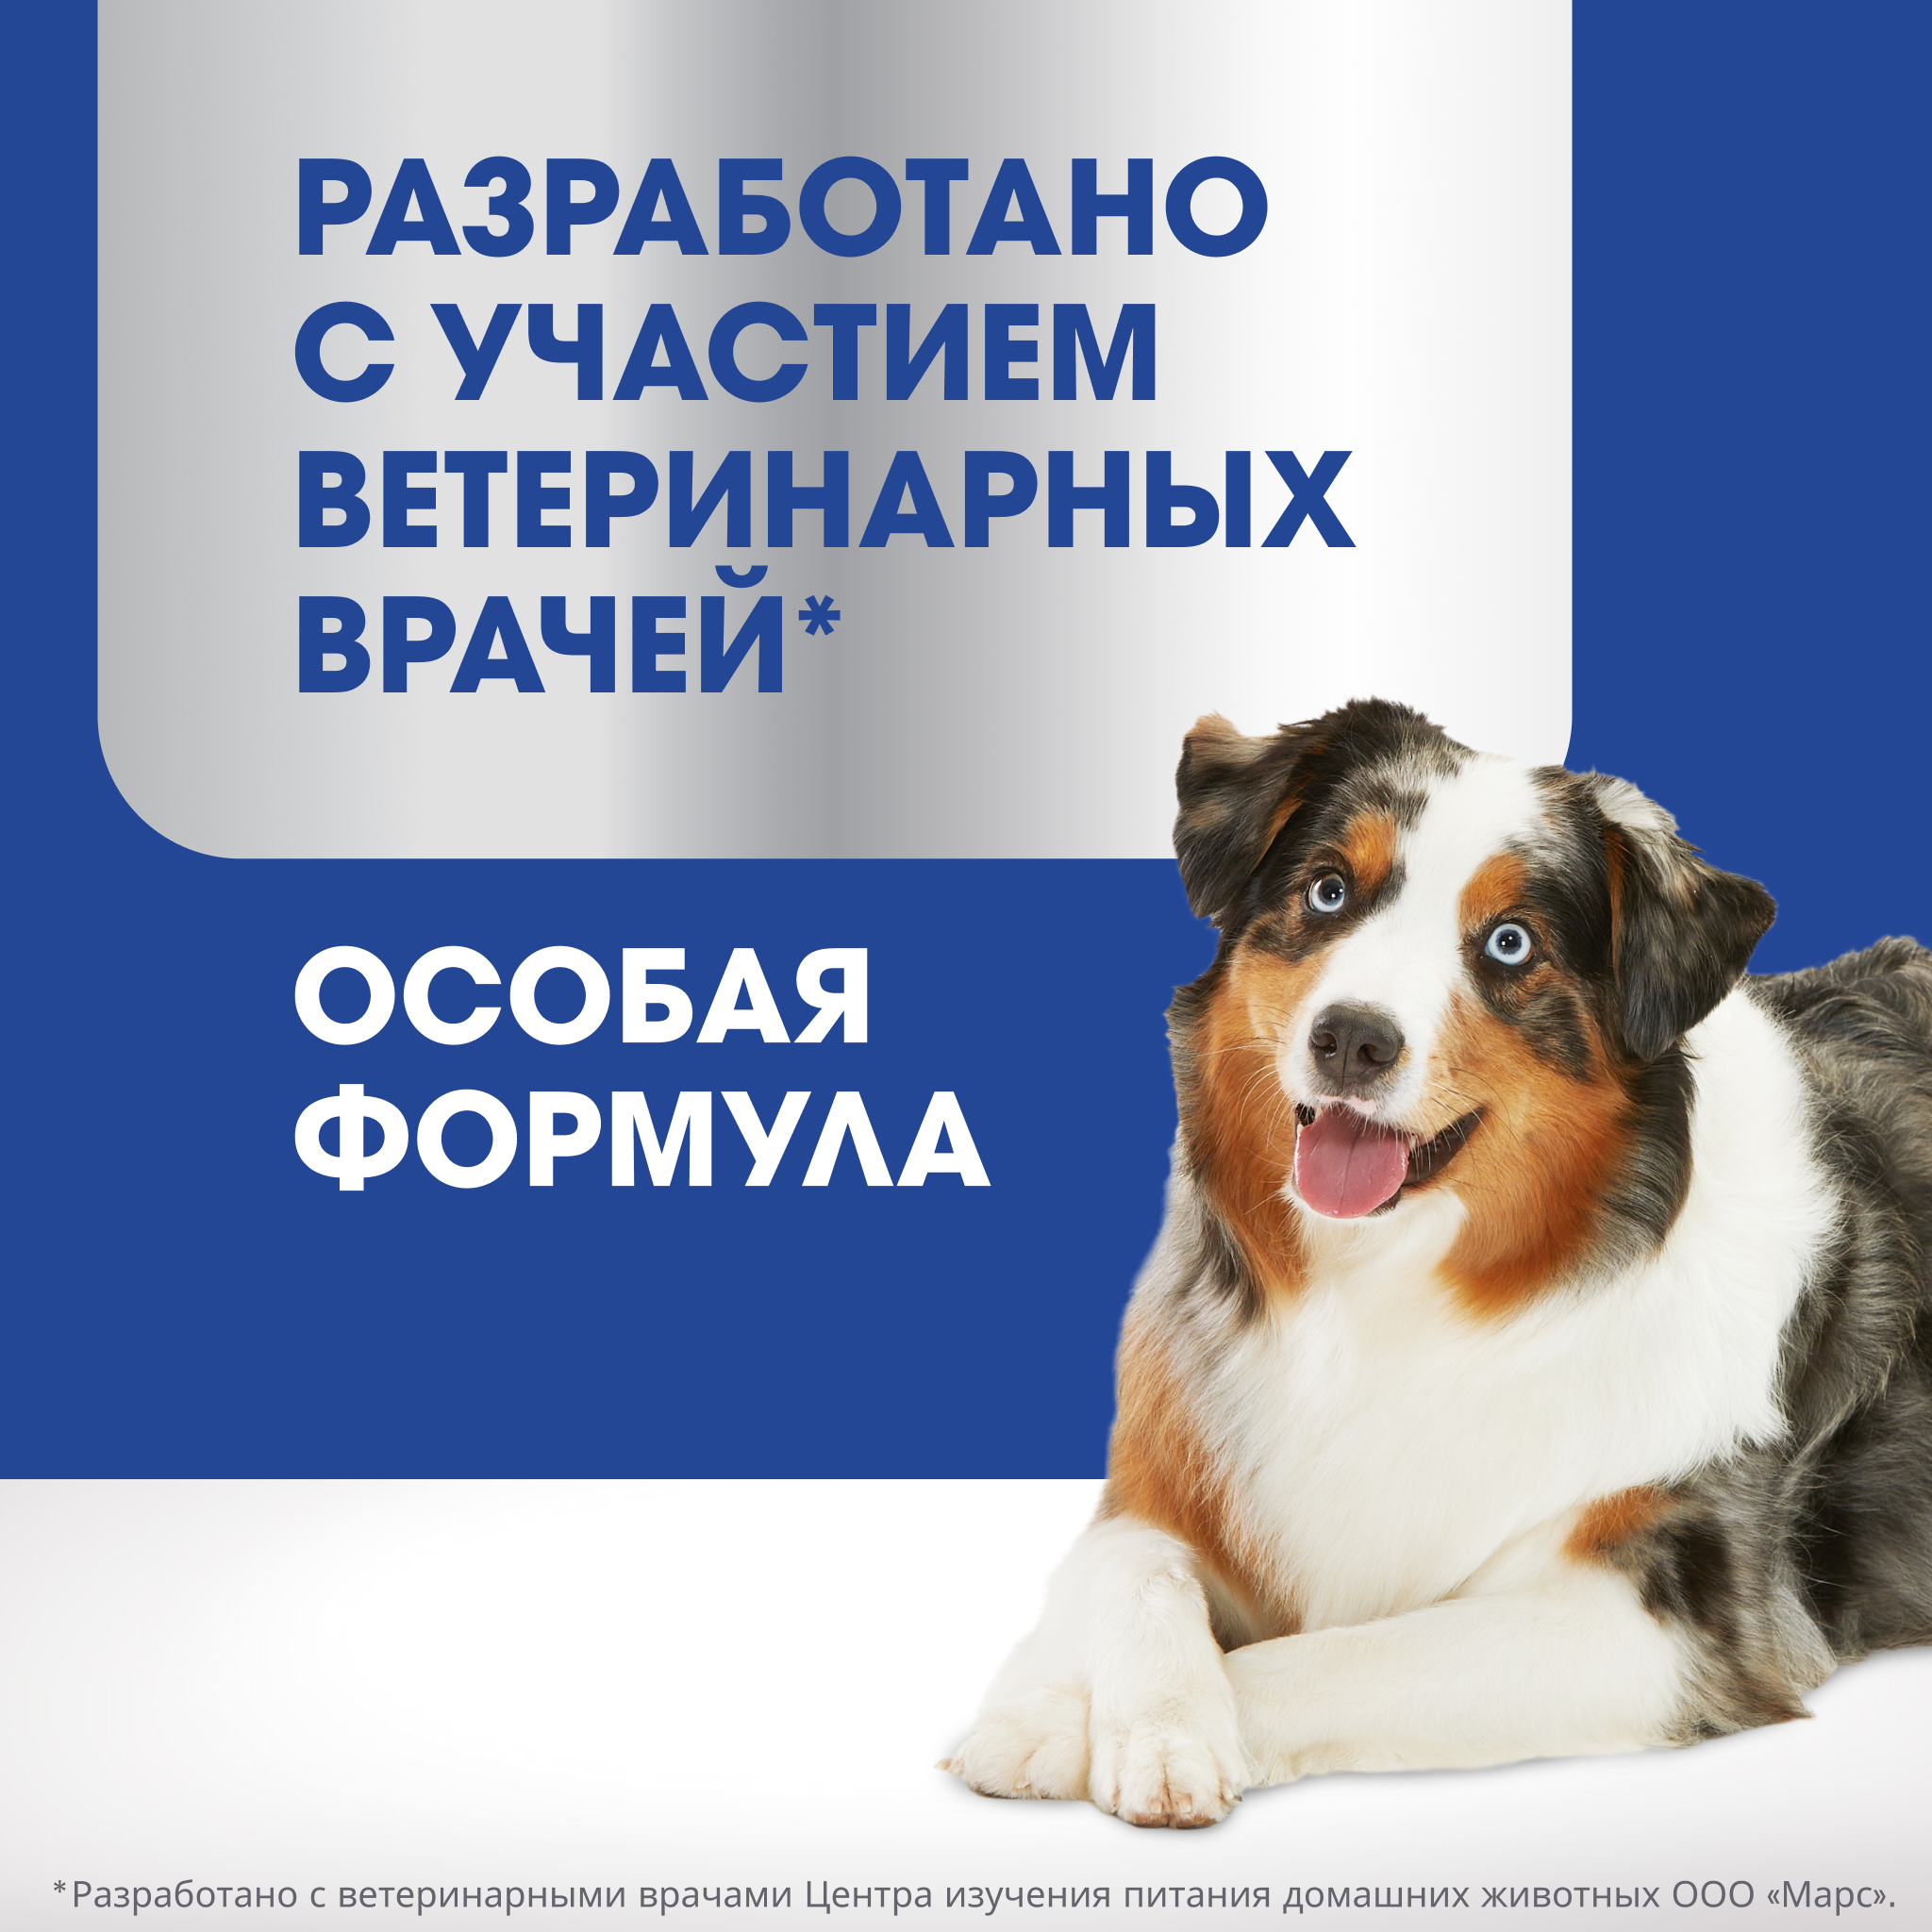 Лакомство для собак PERFECT FIT JOINTS CARE  «Для поддержания здоровья суставов» с говядиной 130г